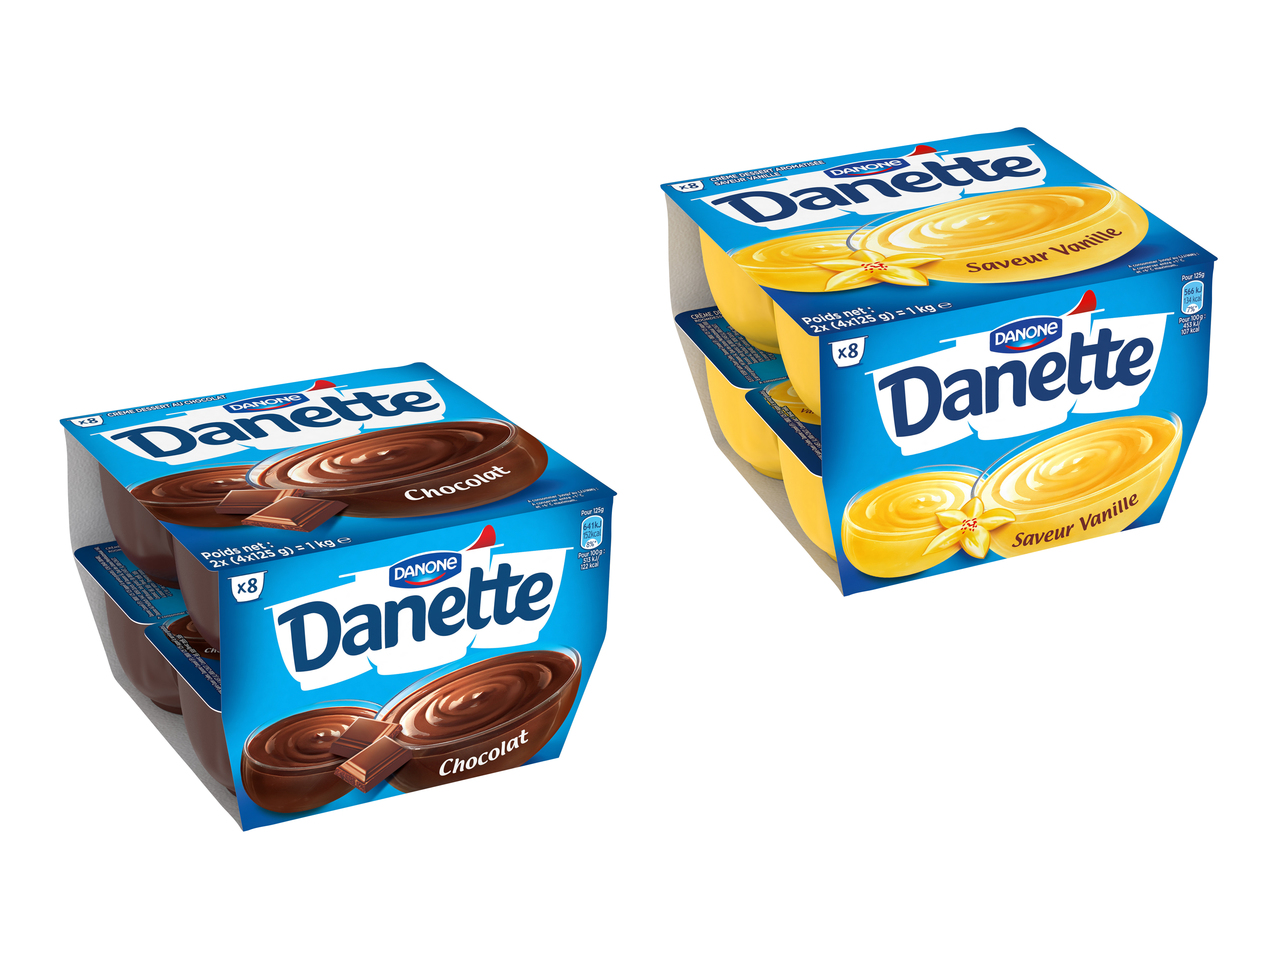 Danette cioccolato/ vaniglia Danone